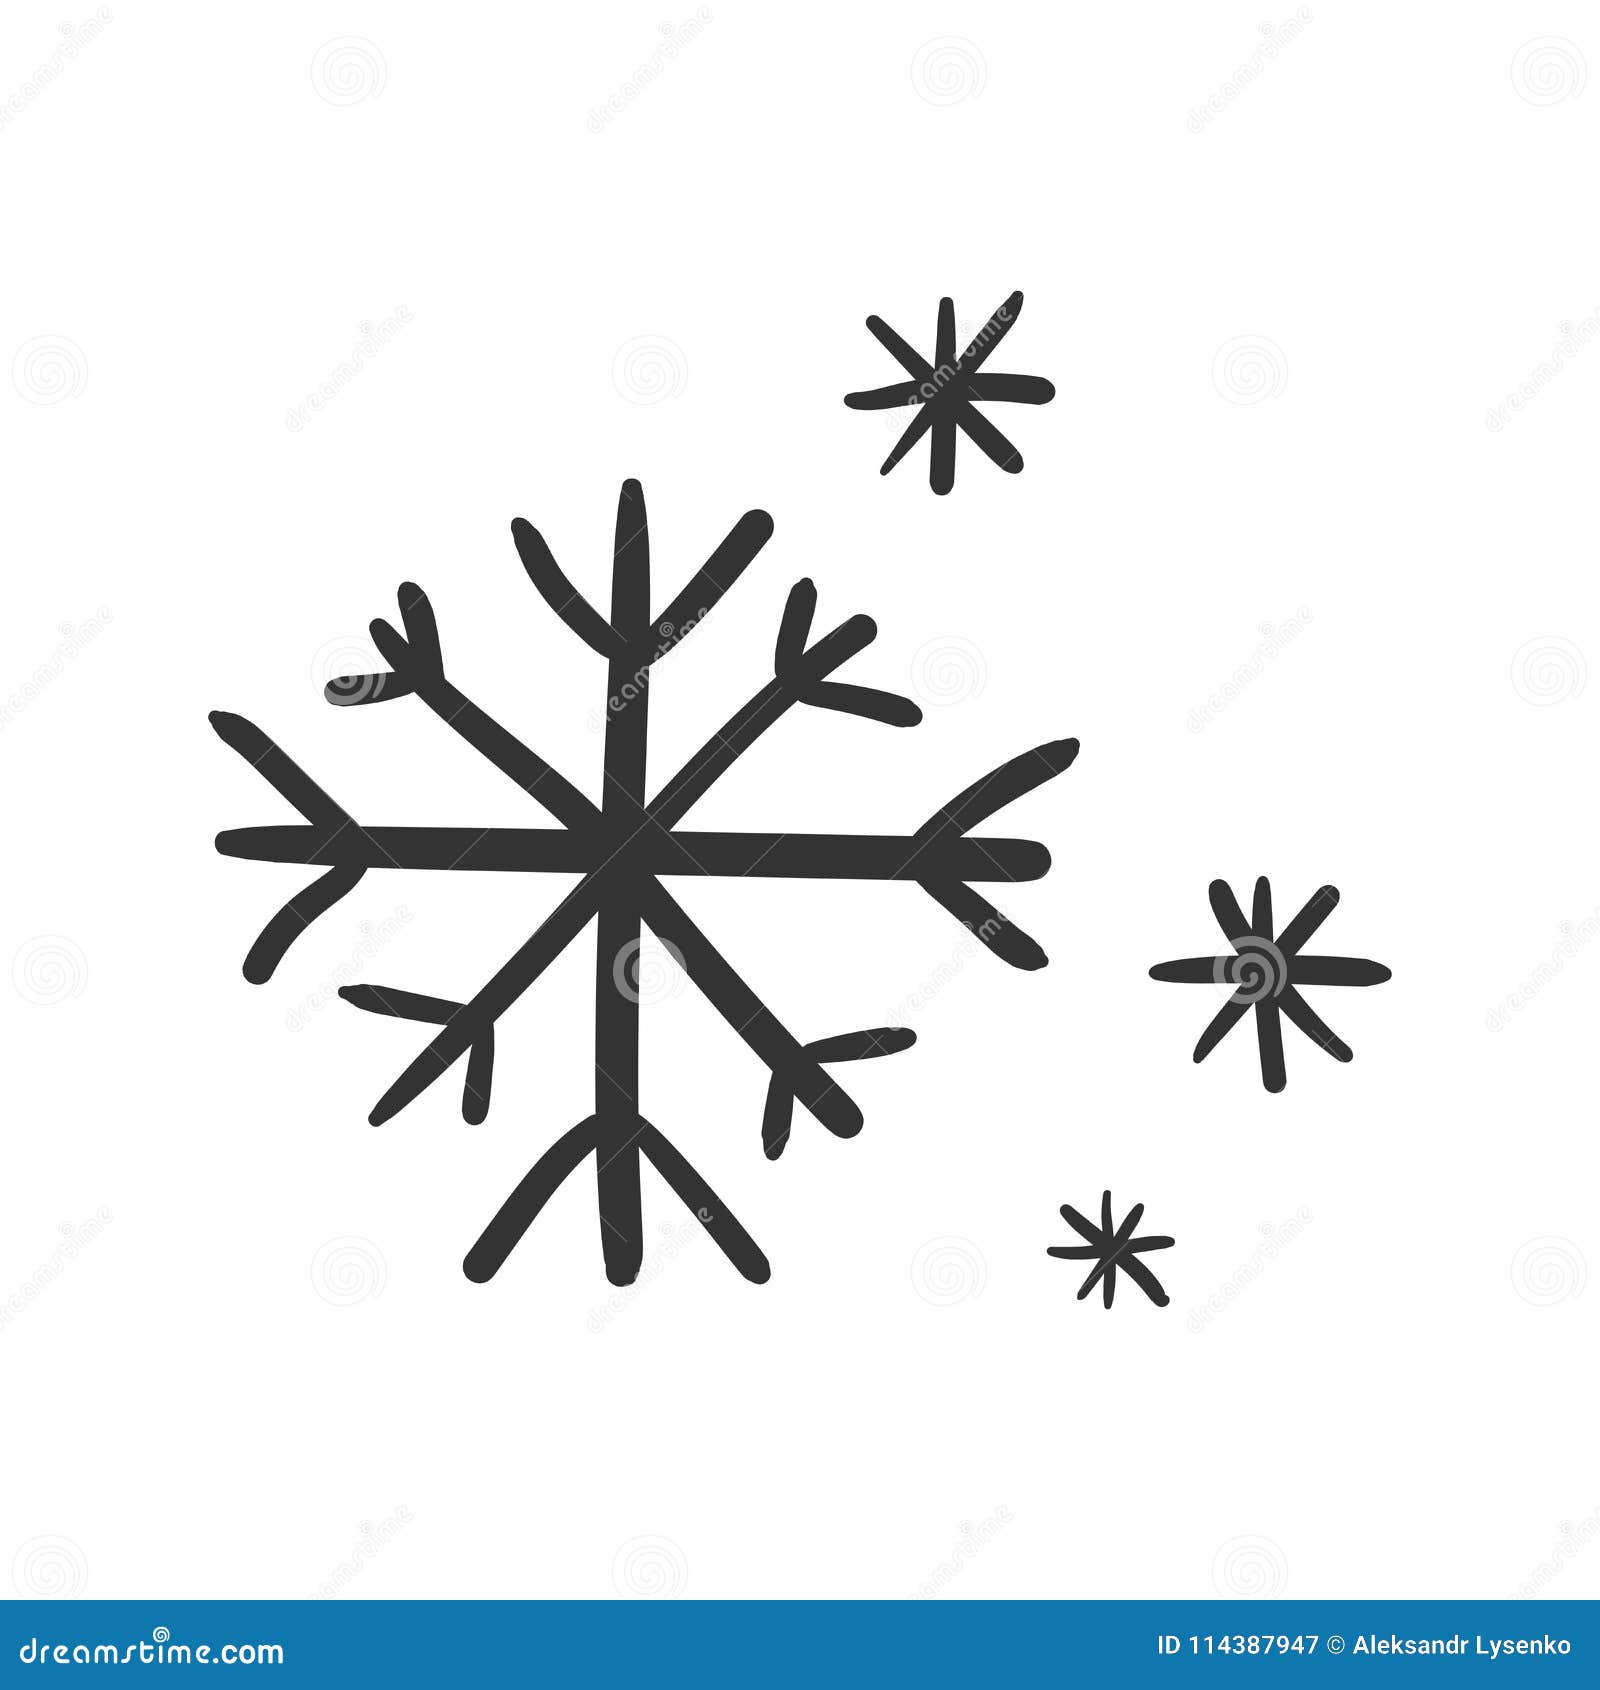 hand drawn snowflake  icon. snow flake sketch doodle illus